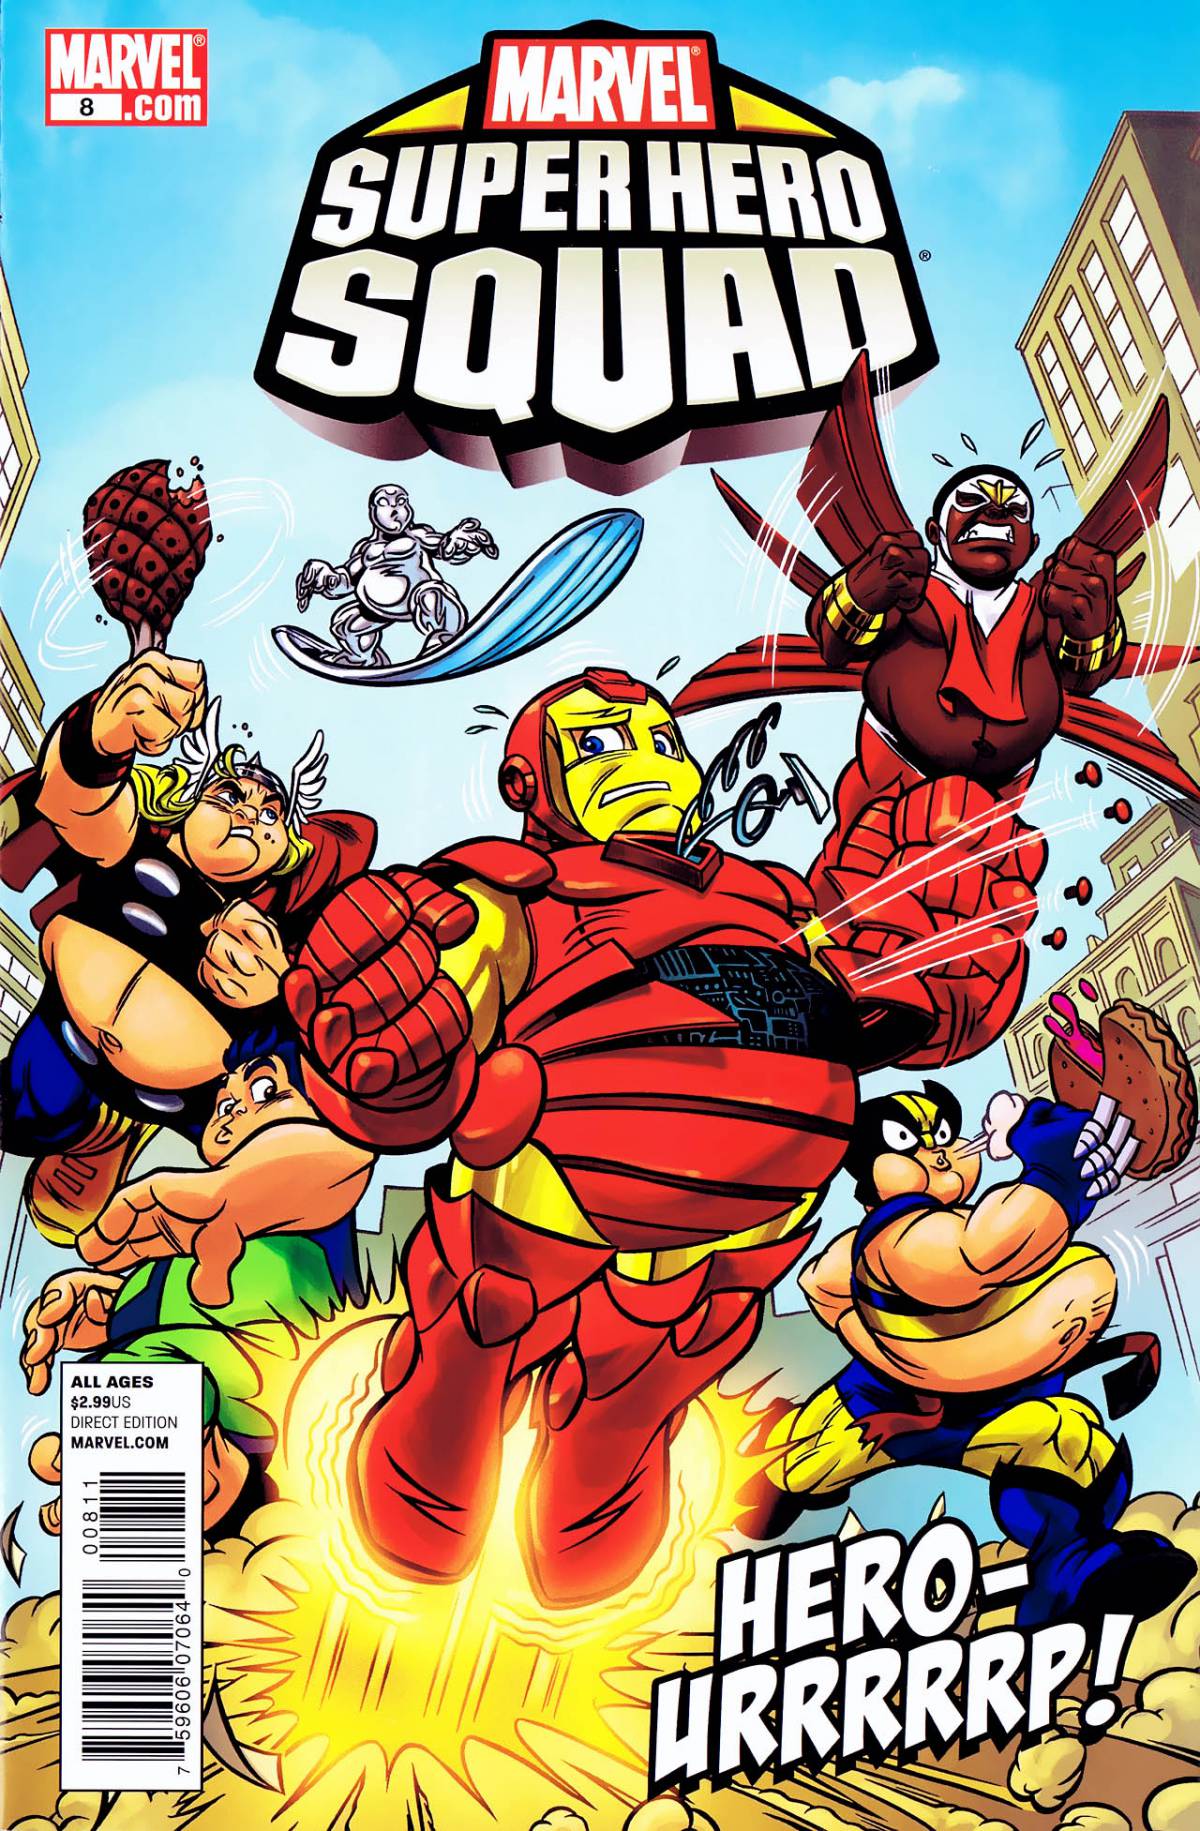 Marvel SUPER HERO SQUAD #8